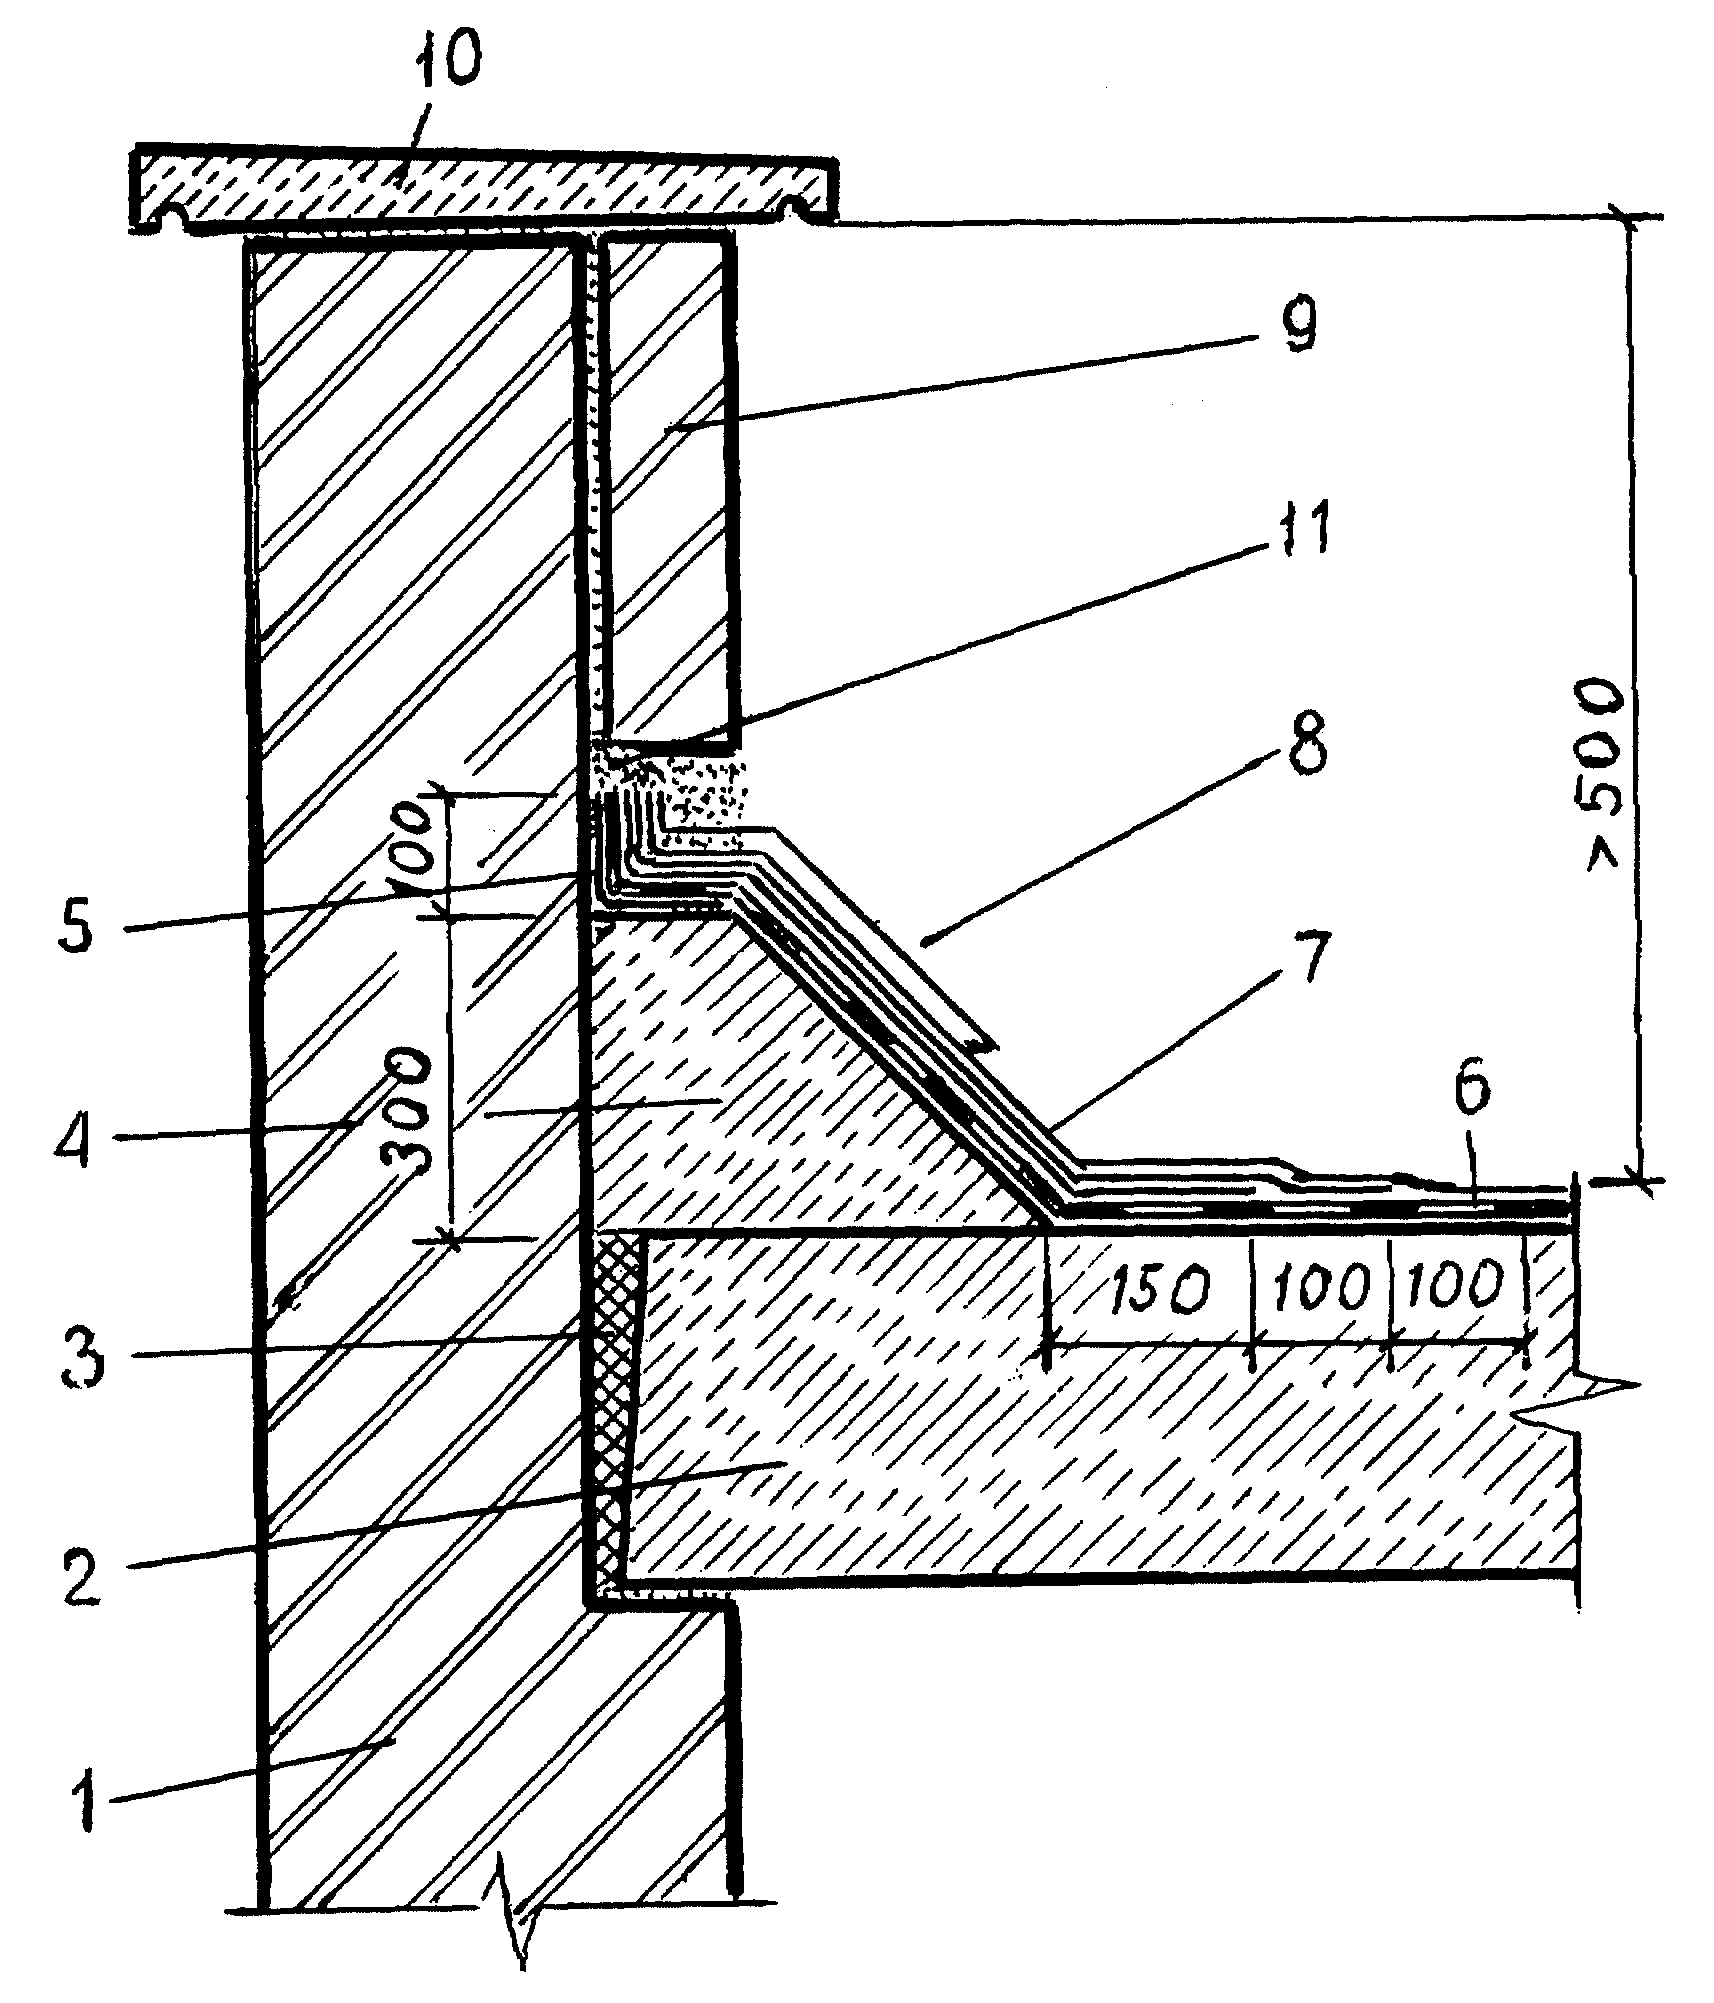 Планка примыкания верхняя и нижняя: монтаж узла примыкания кровли к стене здания или дымоходу